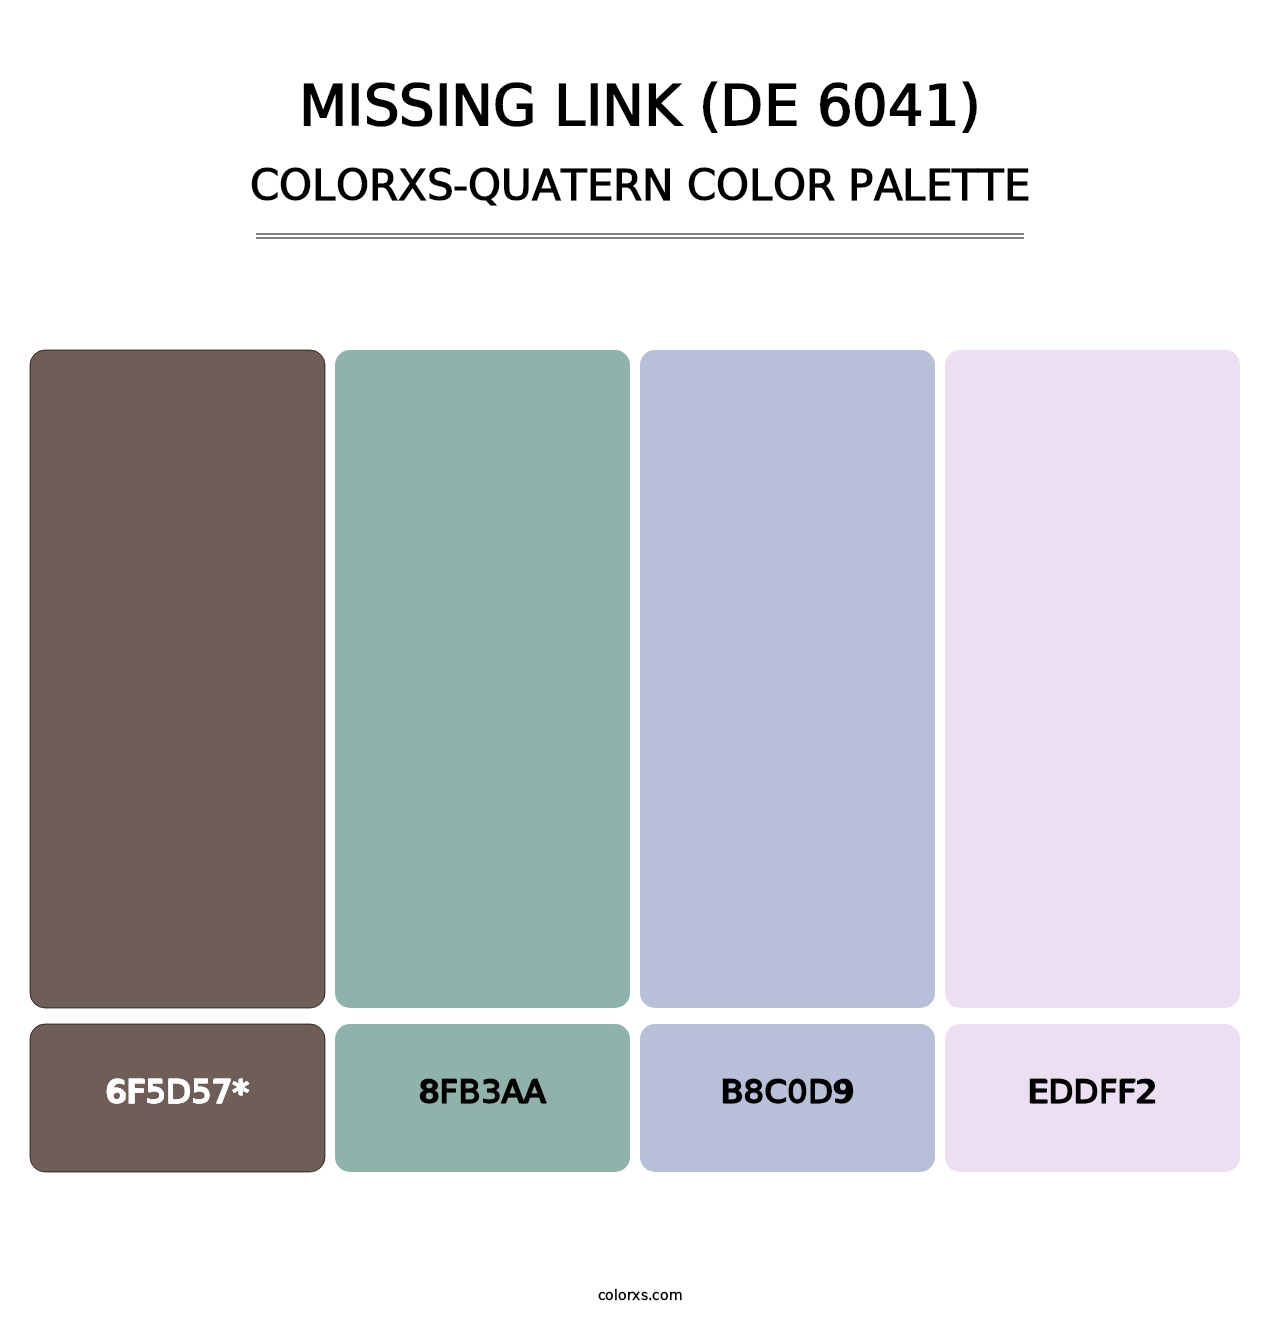 Missing Link (DE 6041) - Colorxs Quatern Palette